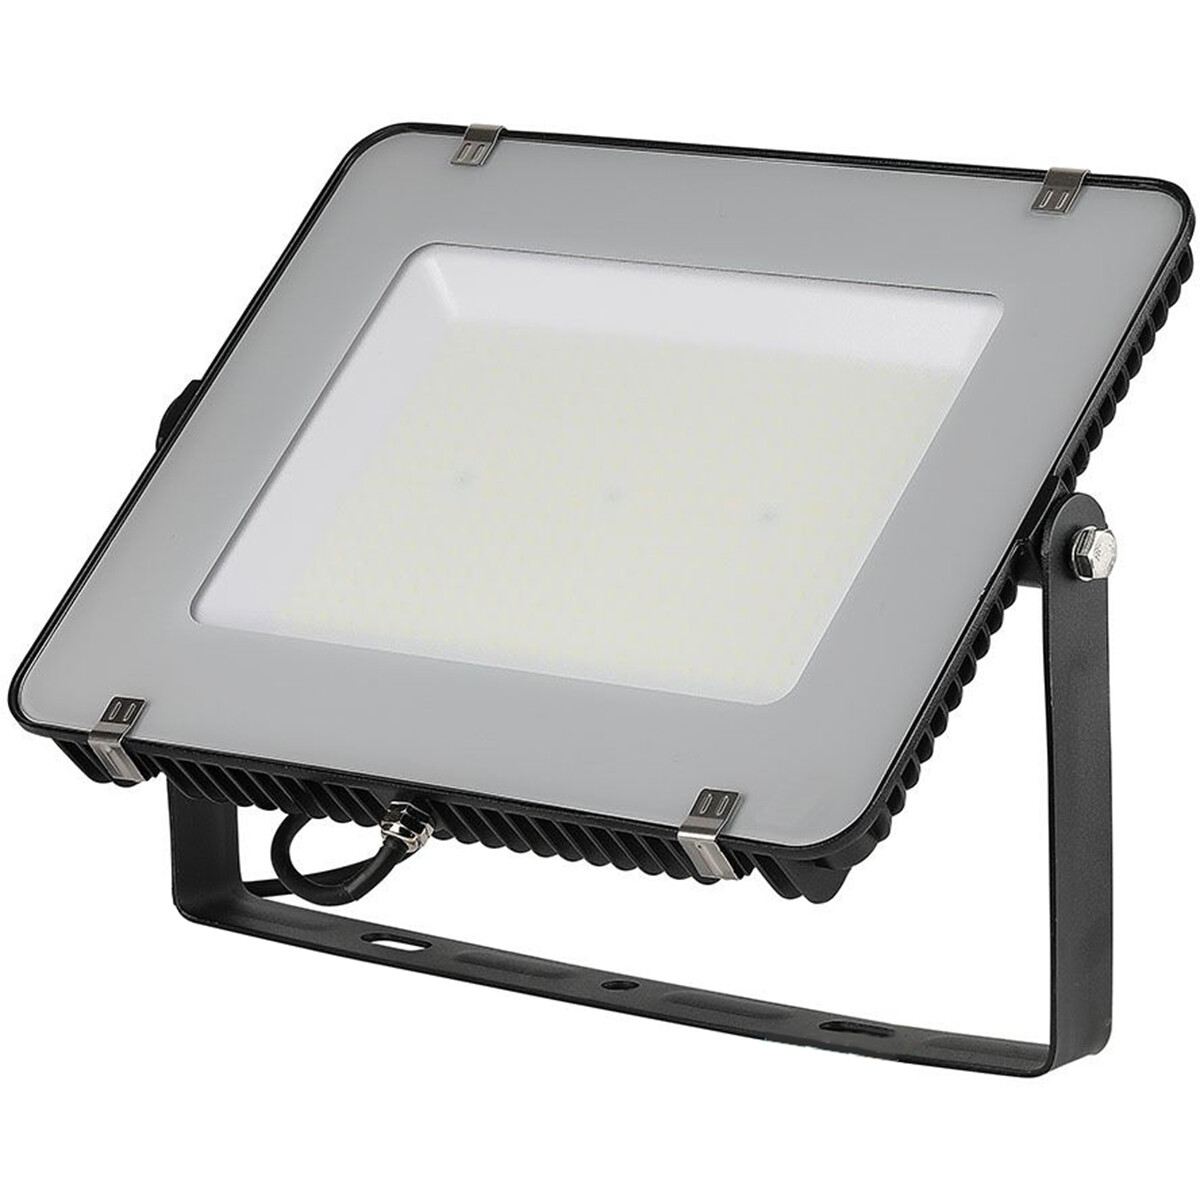 LED Bouwlamp 200 Watt - LED Schijnwerper - Viron Linan - Helder/Koud Wit 6400K - Waterdicht IP65 - Mat Zwart - Aluminium - SAMSUNG LEDs